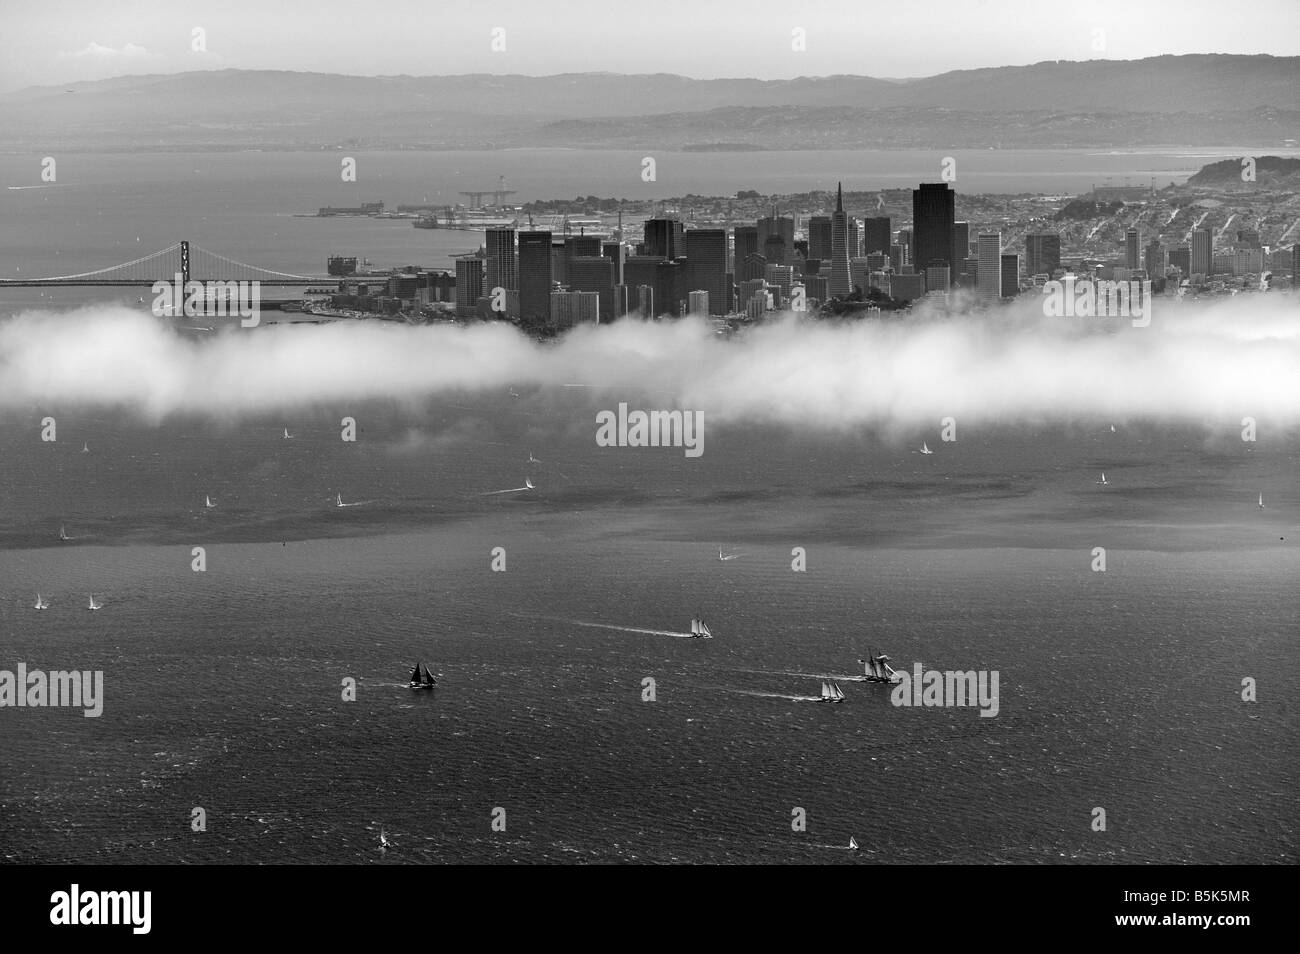 Luftbild oben Segelregatten, die Bucht von San Francisco San Francisco Skyline und Bay Bridge im Hintergrund Stockfoto